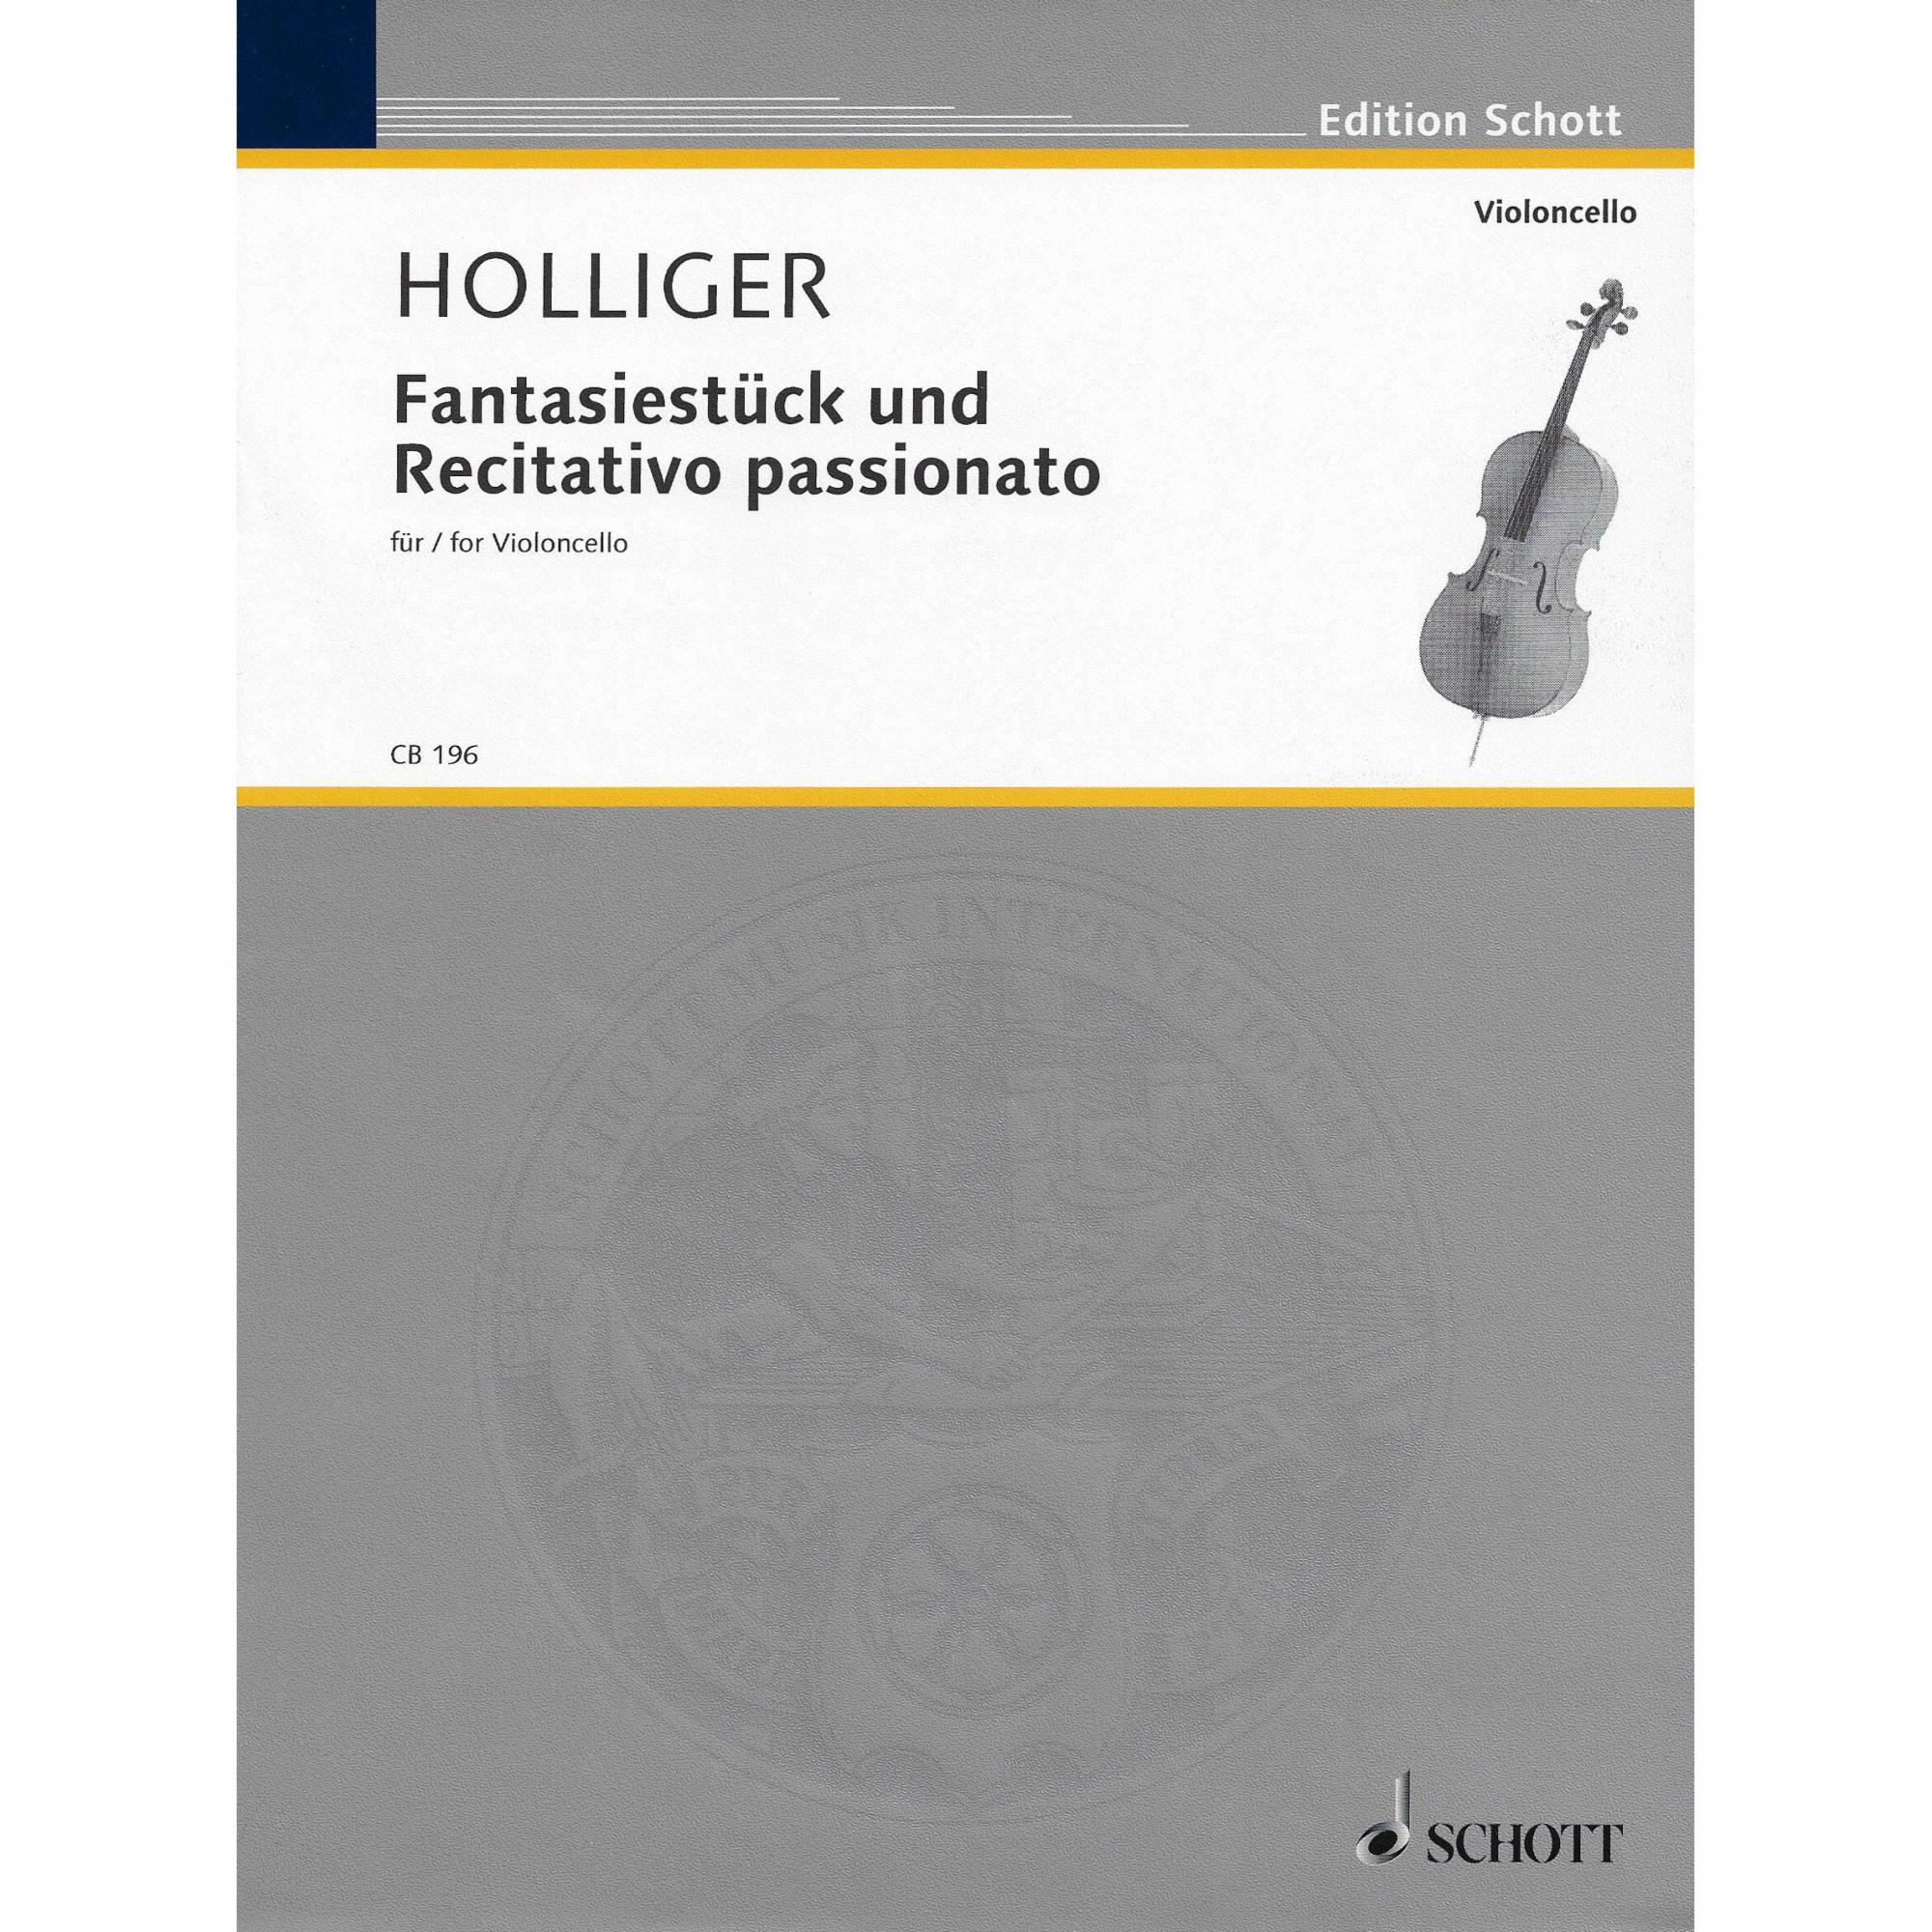 Holliger -- Fantasiestuck und Recitativo passionato for Solo Cello